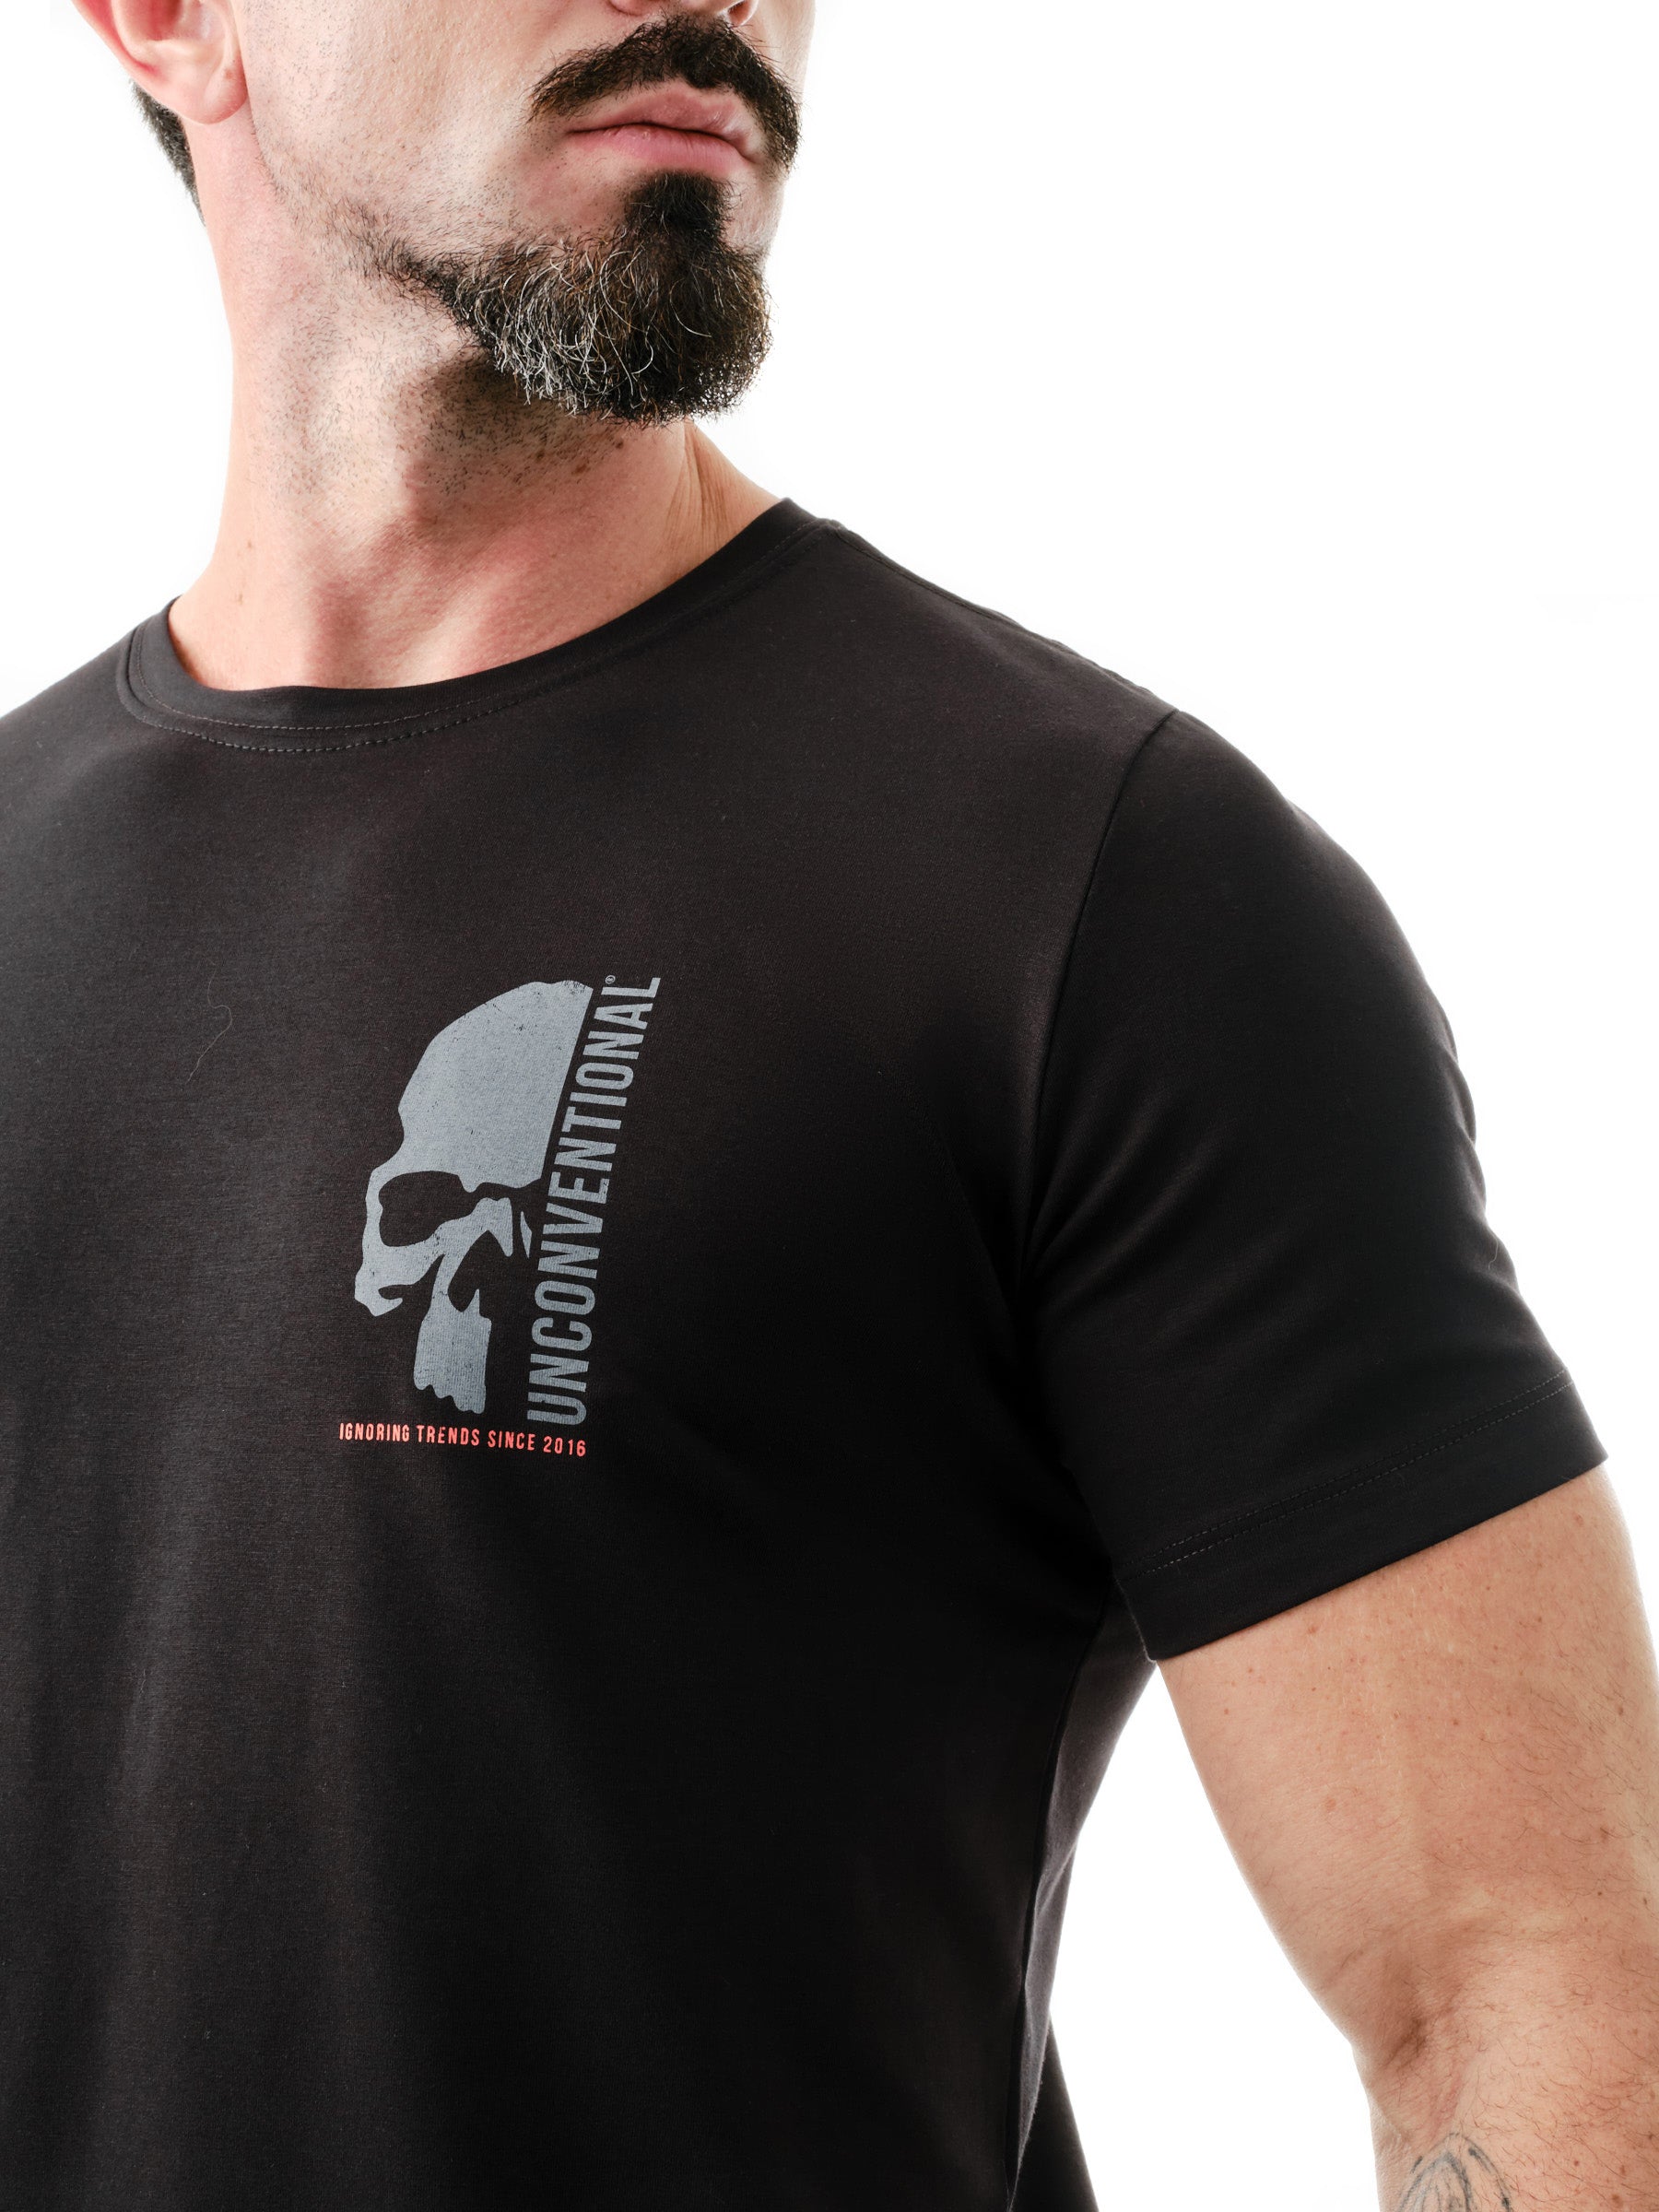 Camiseta Unconventional® Half Face Skull em Algodão Egípcio